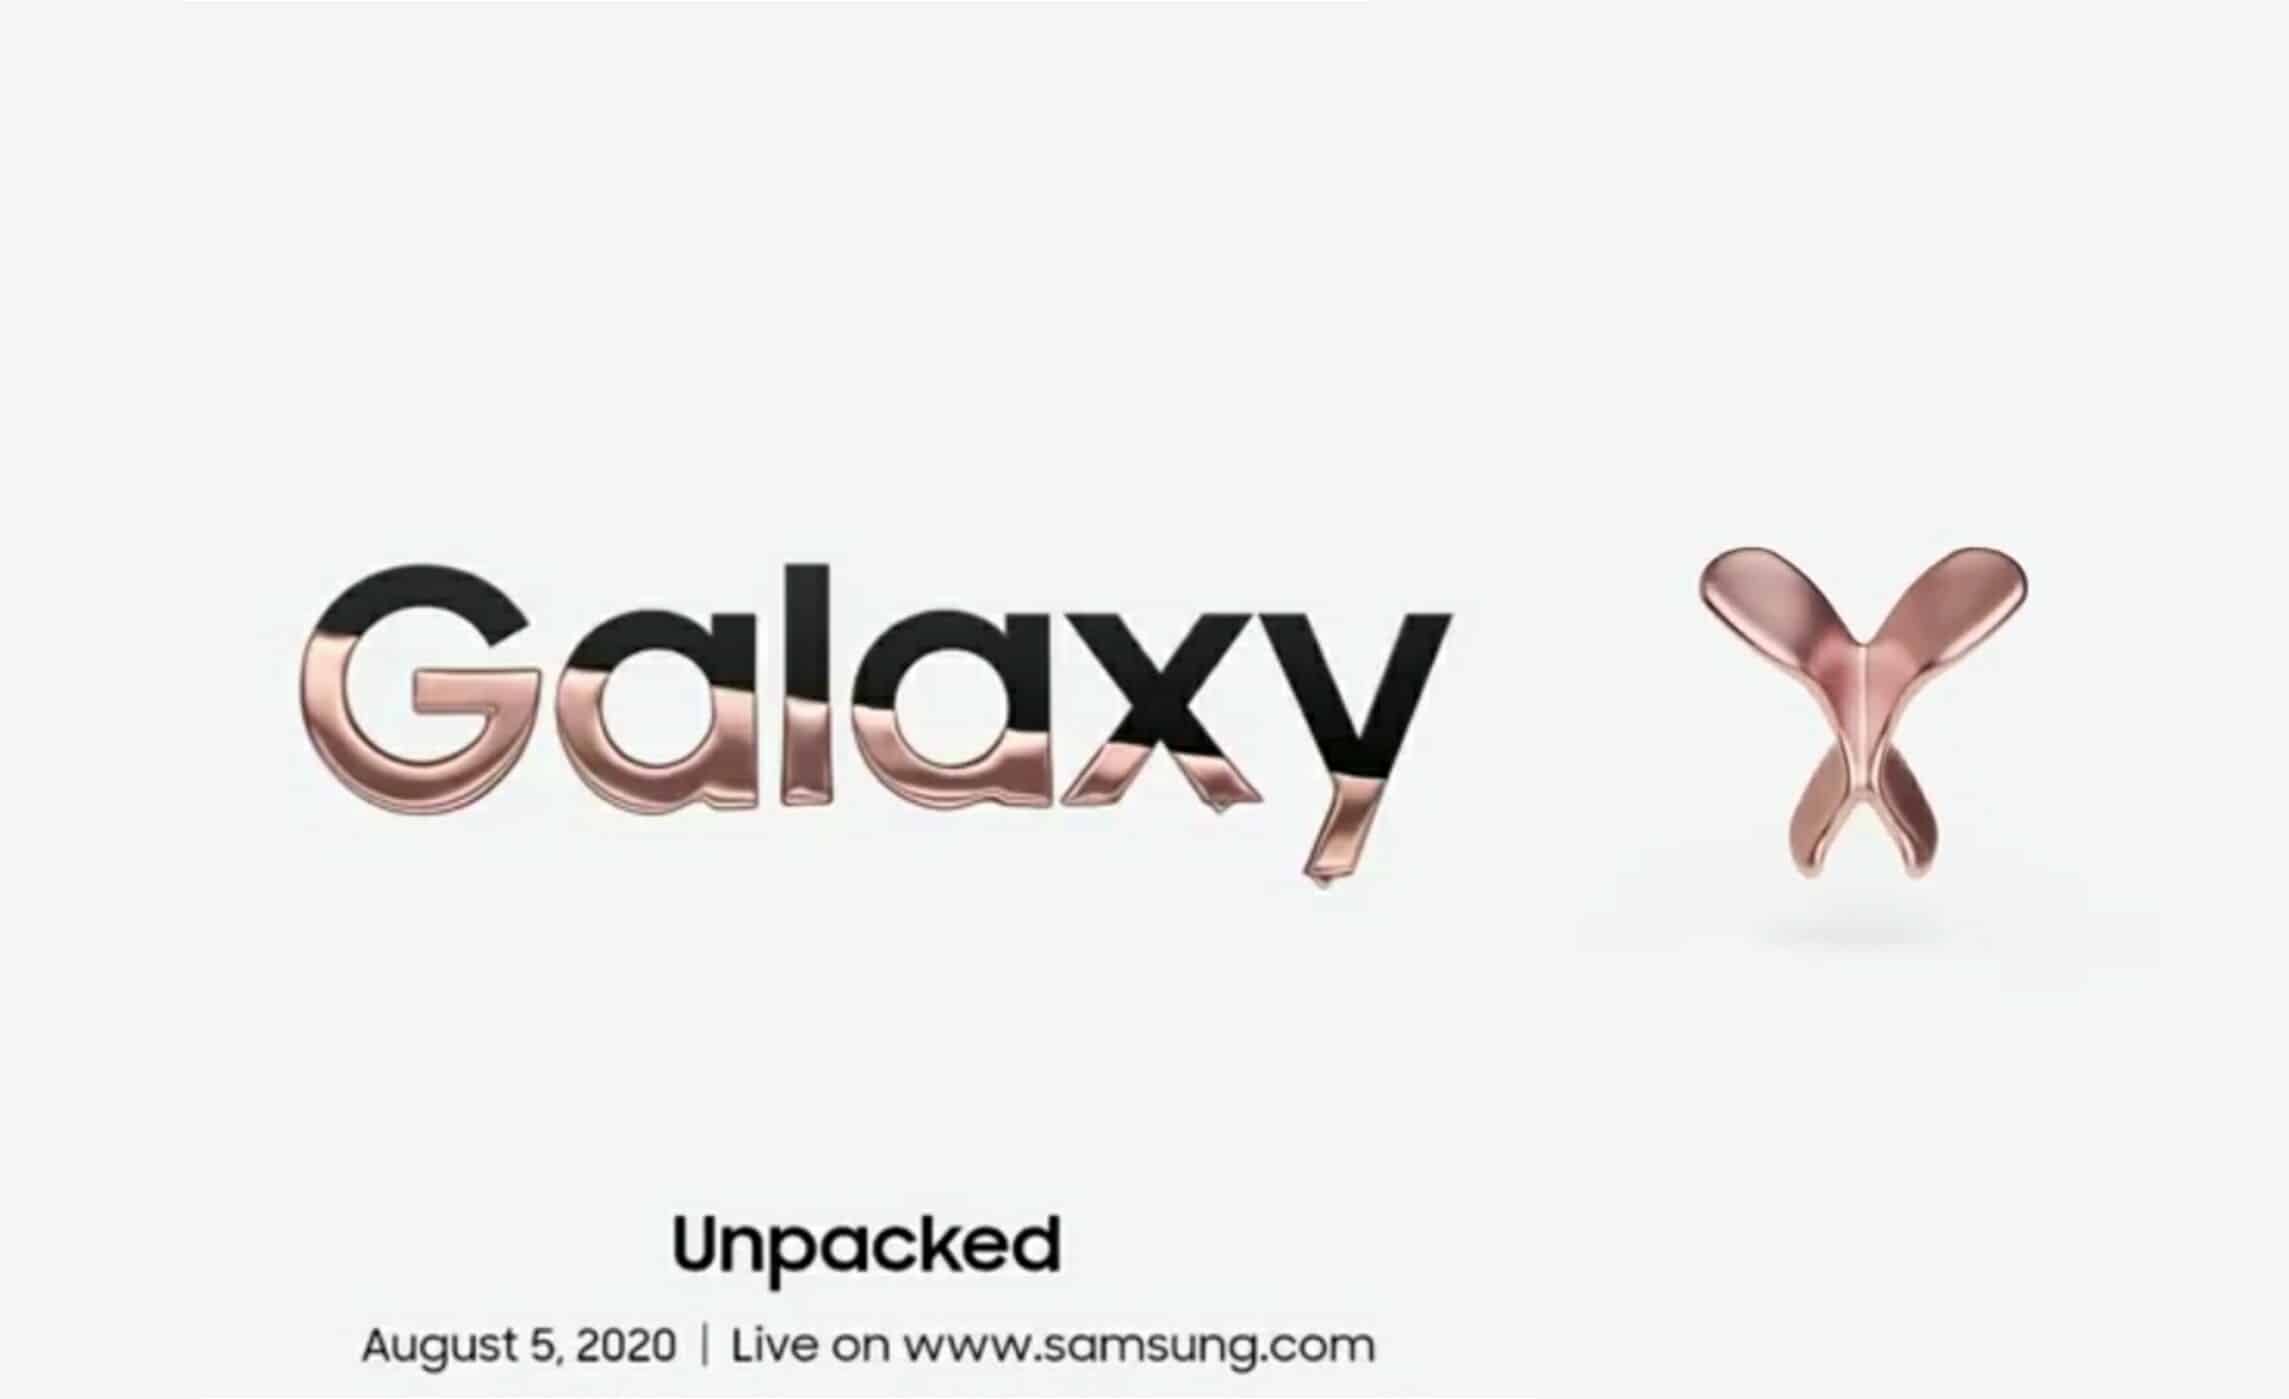 بعد الكشف عن الصور الفعلية ، هذا كل ما نعرفه عن Samsung Galaxy Z Fold2 